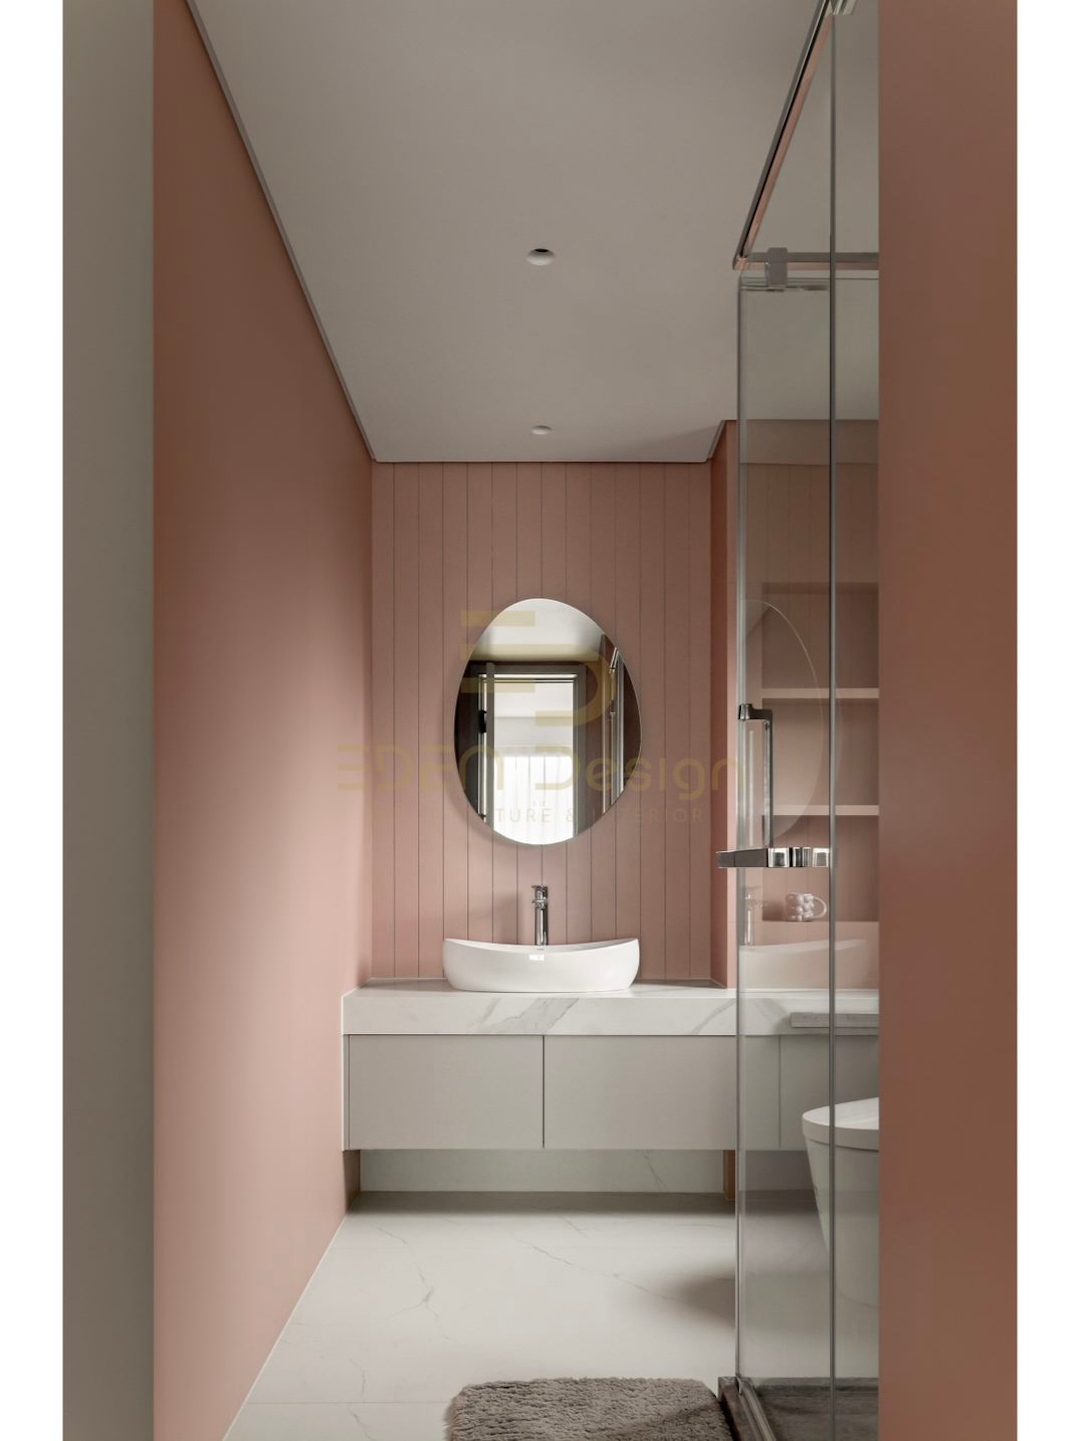 Nhà vệ sinh màu hồng dễ thương